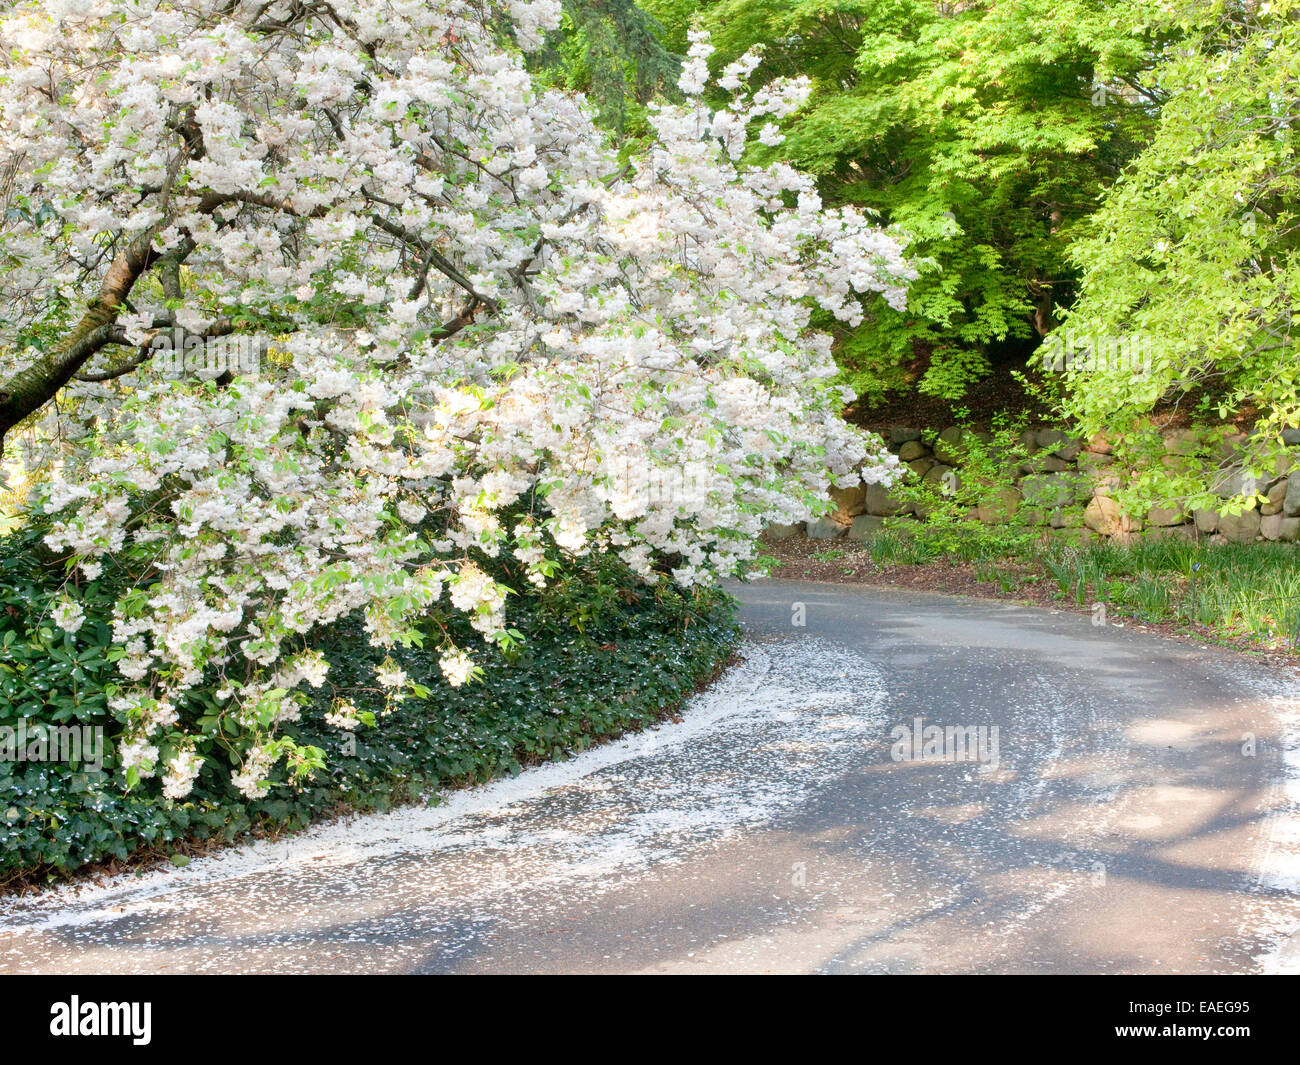 Primavera de flores y pétalos de flores en árboles caídos y a lo largo de la carretera Foto de stock